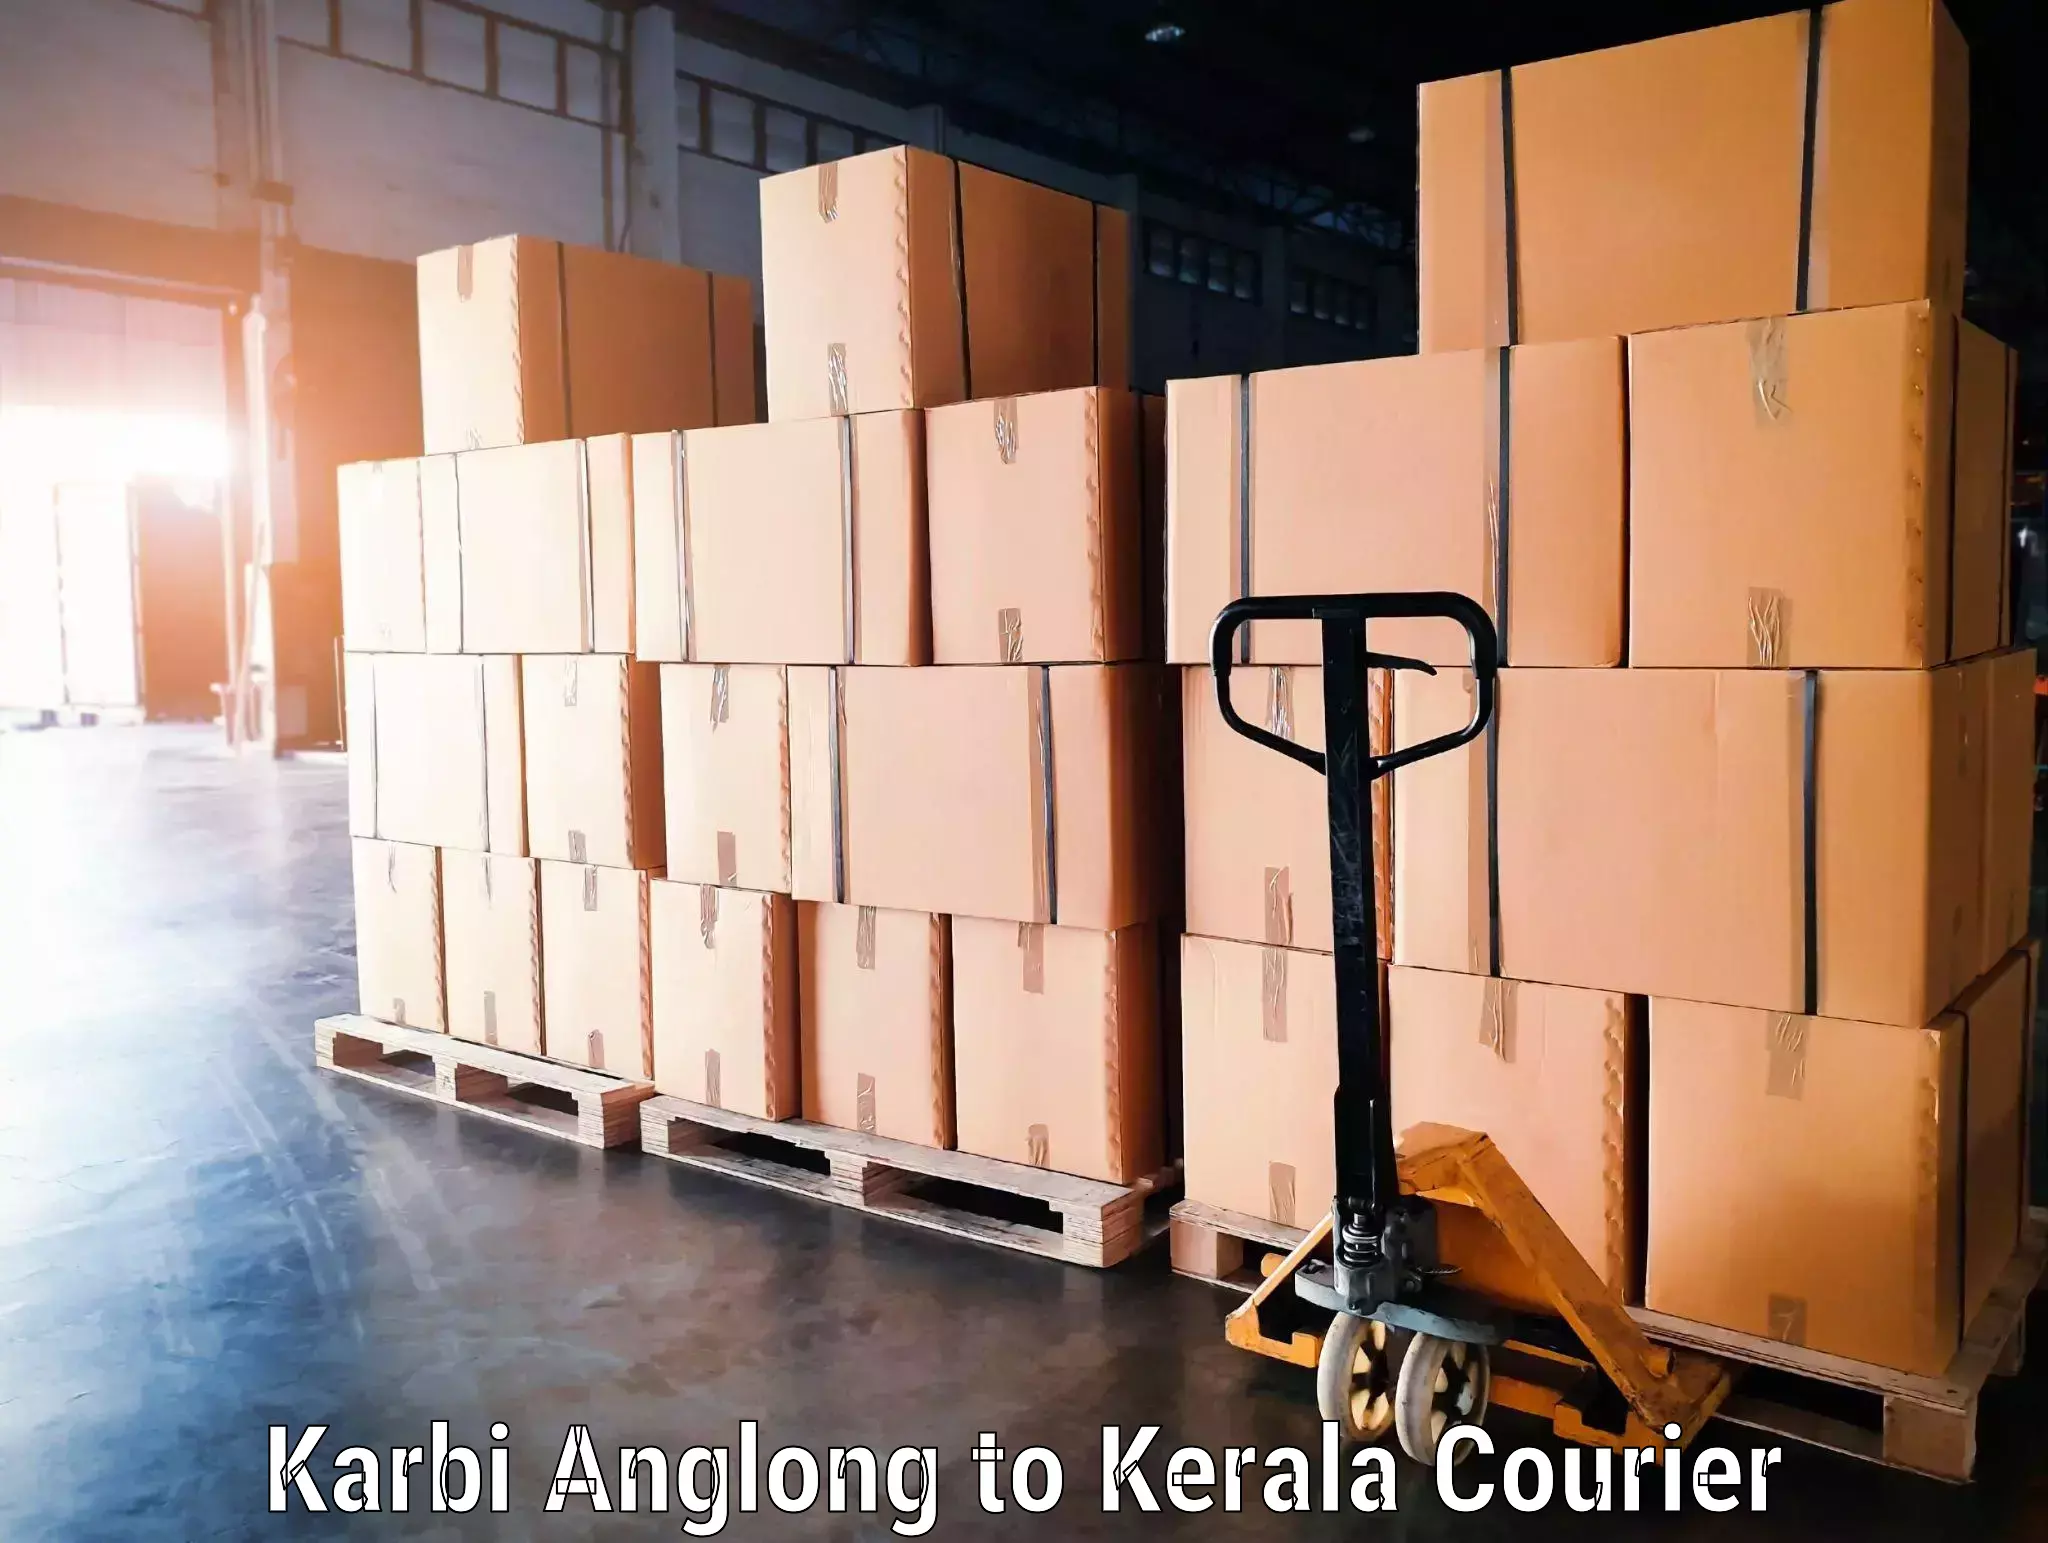 Door-to-door baggage service Karbi Anglong to Kunnamkulam